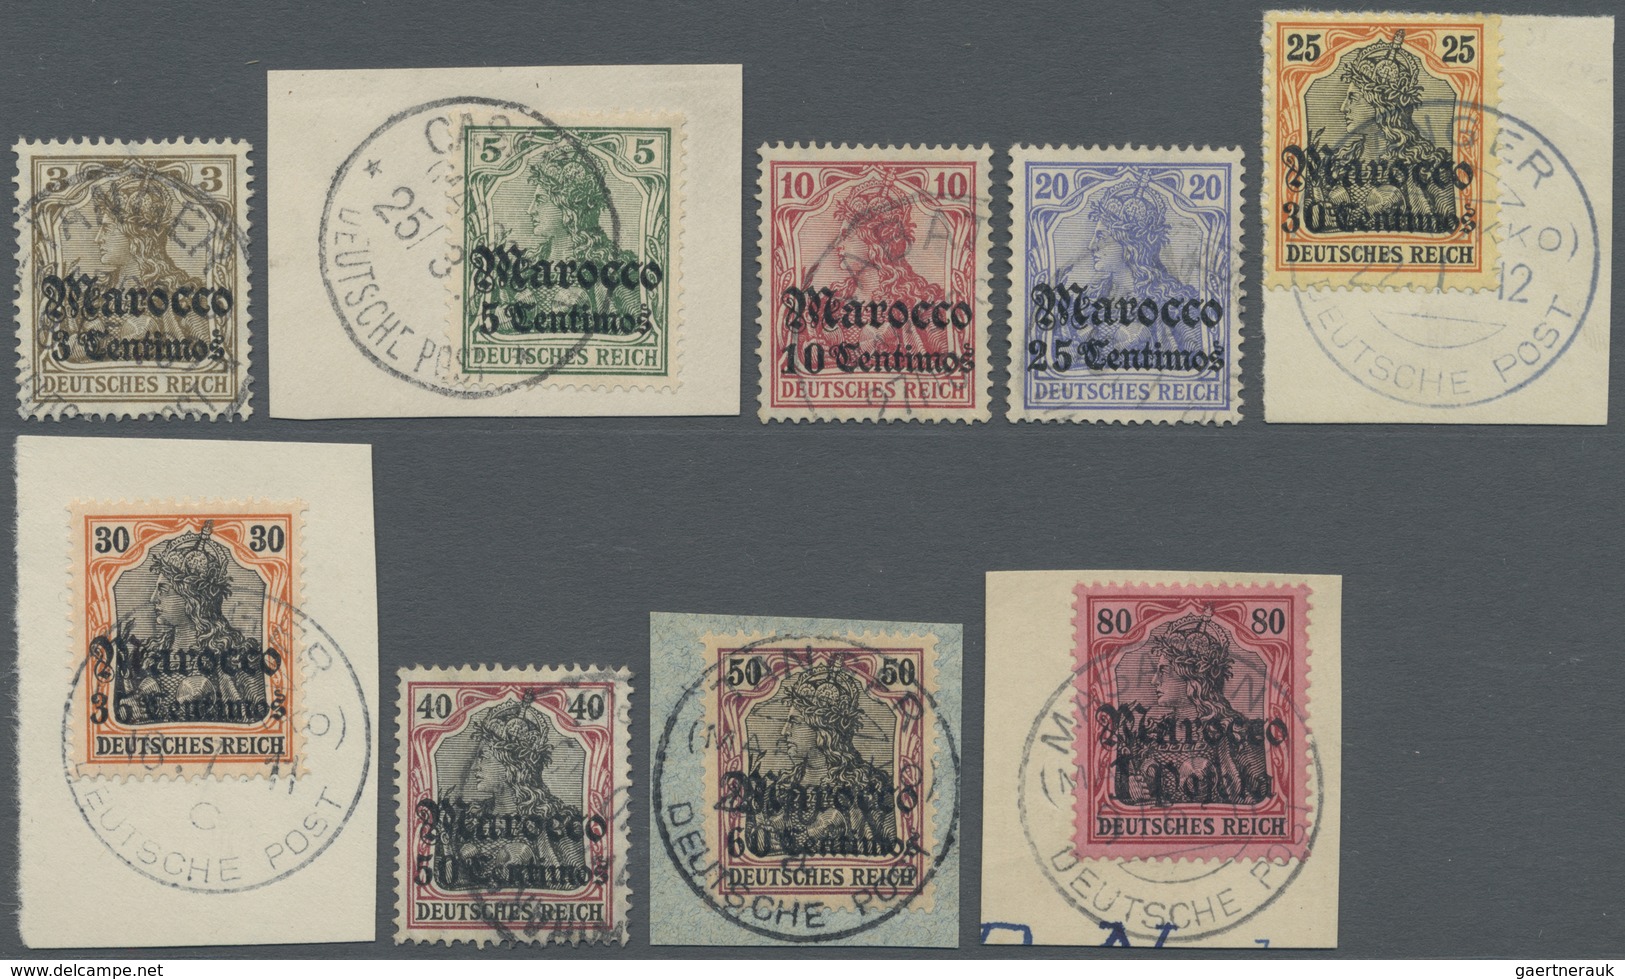 O/Brfst Deutsche Post In Marokko: 1906, Freimarken Germania Mit Wasserzeichen Und Überdruck "Marocco" Sauber - Maroc (bureaux)